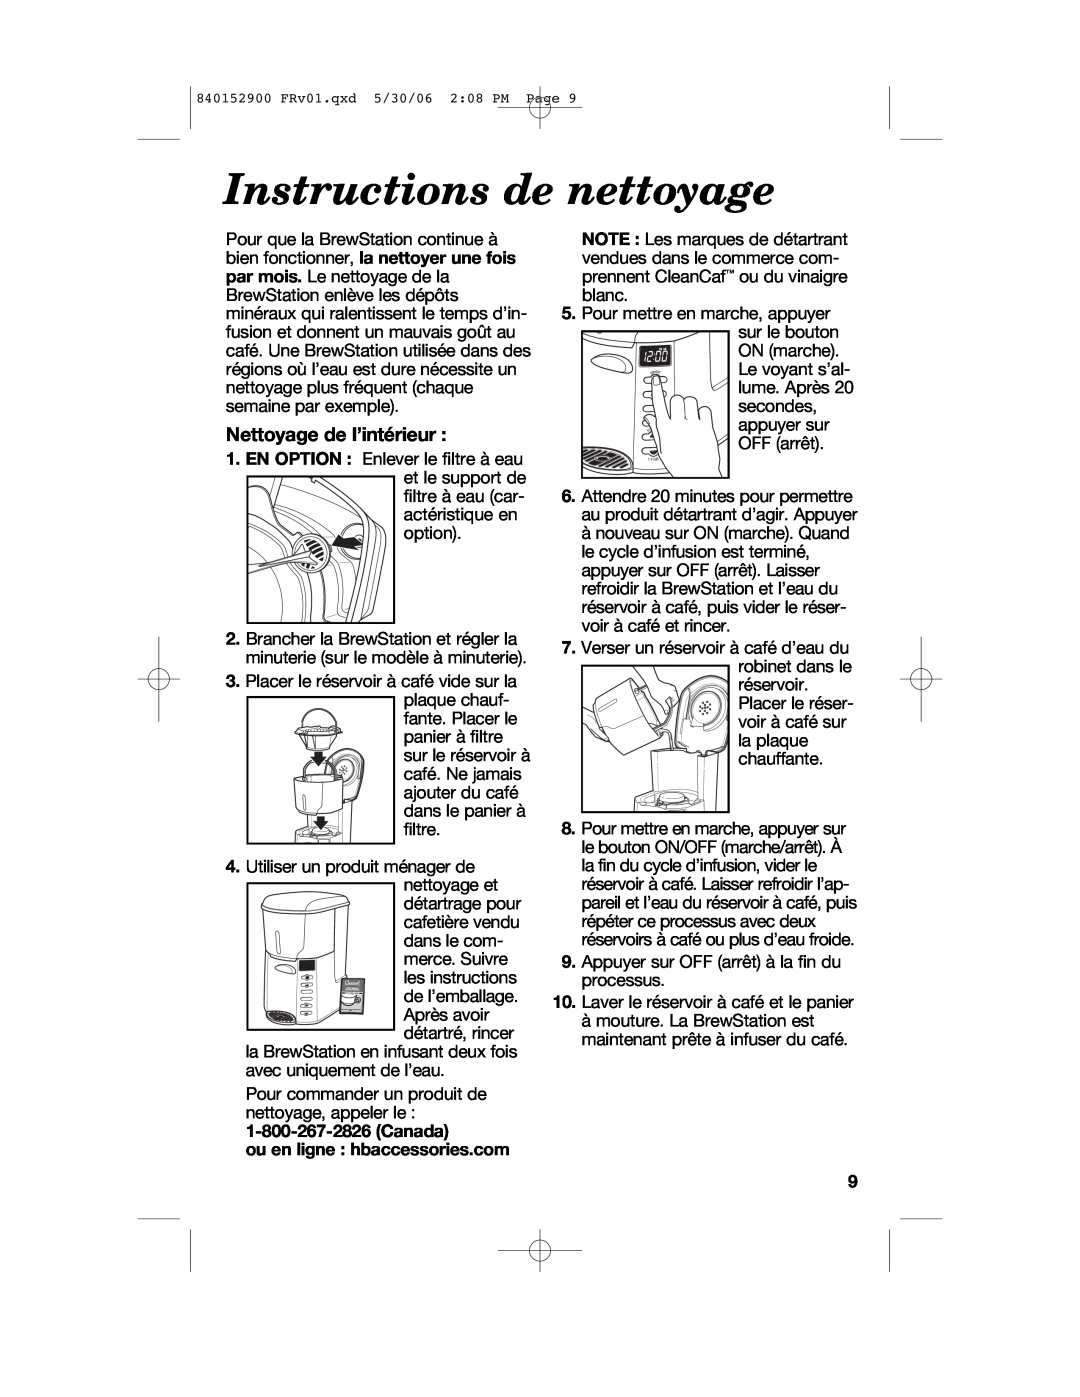 Hamilton Beach 47535C manual Instructions de nettoyage, Nettoyage de l’intérieur, ou en ligne hbaccessories.com 